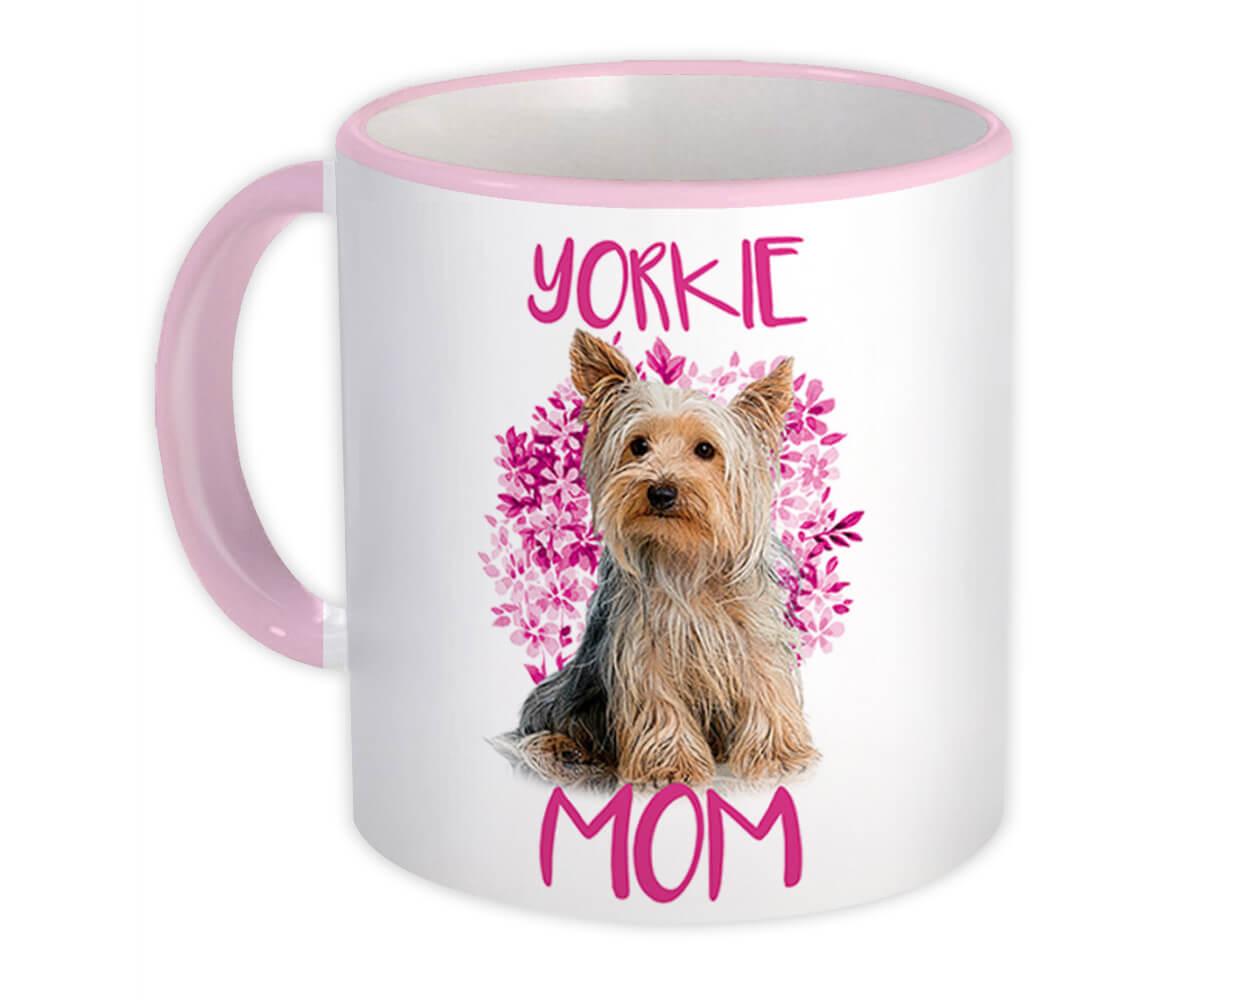 Yorkie World's Best Mum Mug Dog Mum Yorkshire Terrier Mum Cup Friend Funny Gift for Birthday Christmas Yorkie Mug